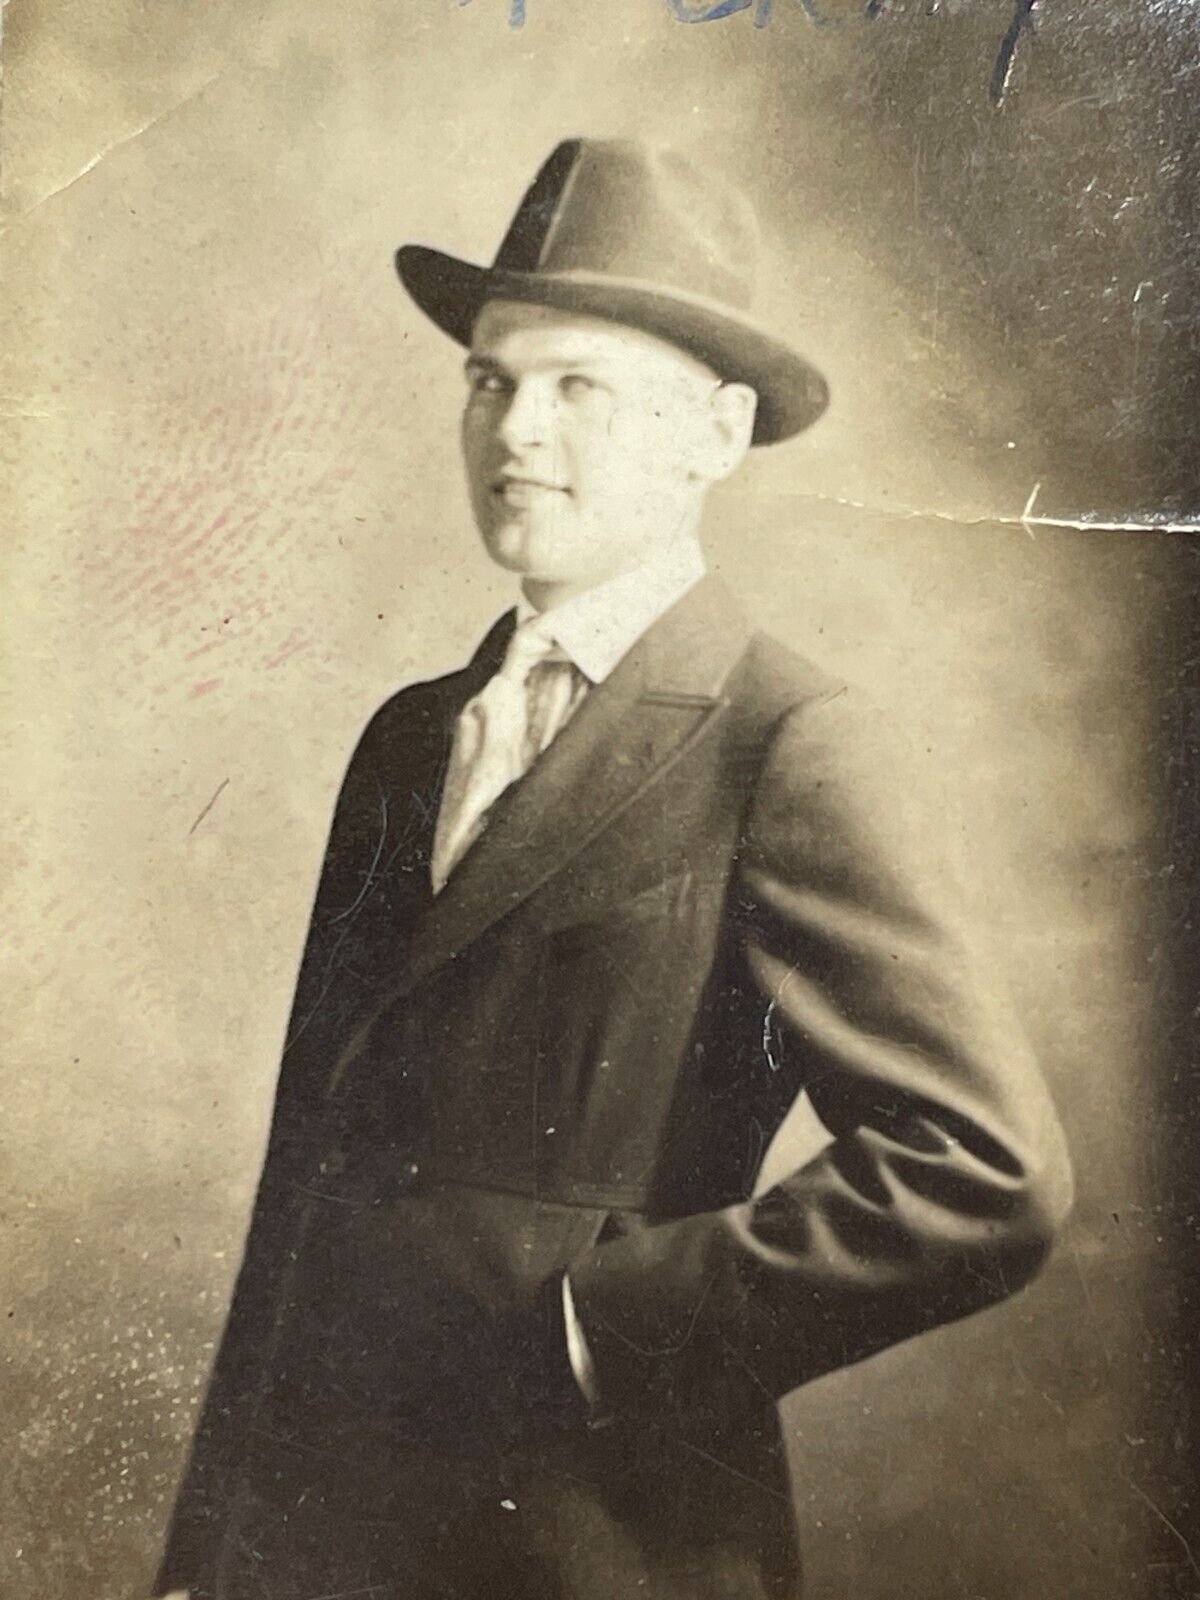 ID Photograph Handsome Man Studio Portrait Big Smile Happy Dapper Suit 1920s Hat